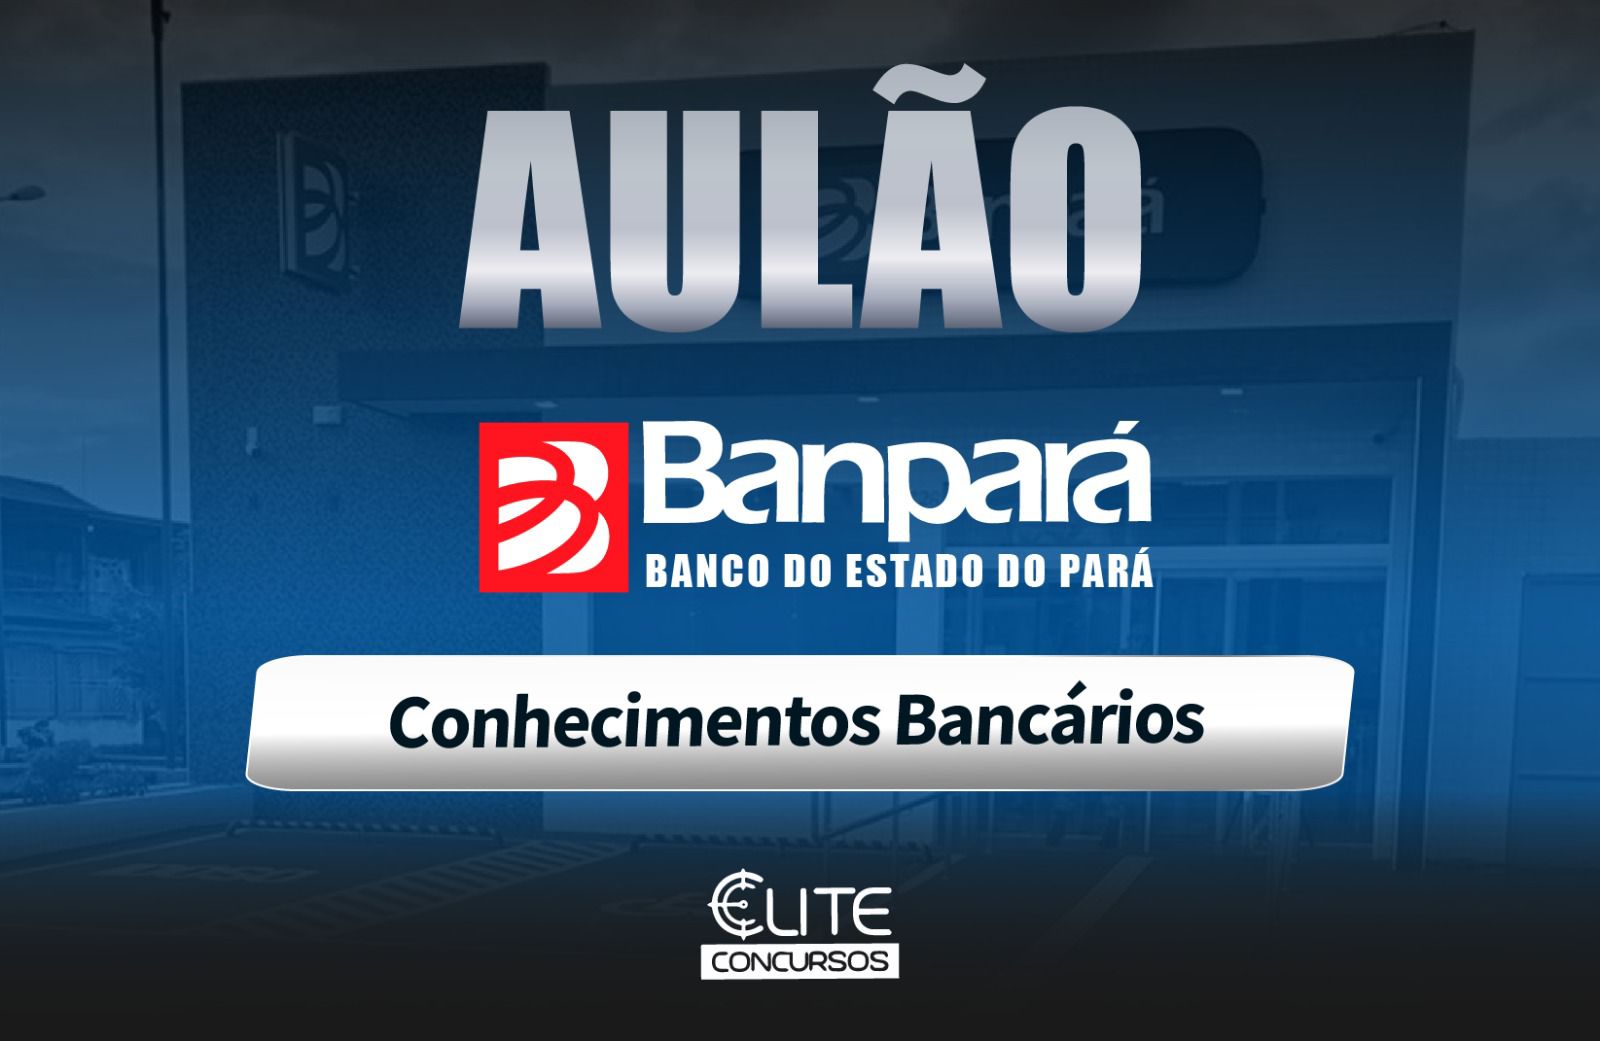 AUL�O BANPAR� - CONHECIMENTOS BANC�RIOS - 01/06